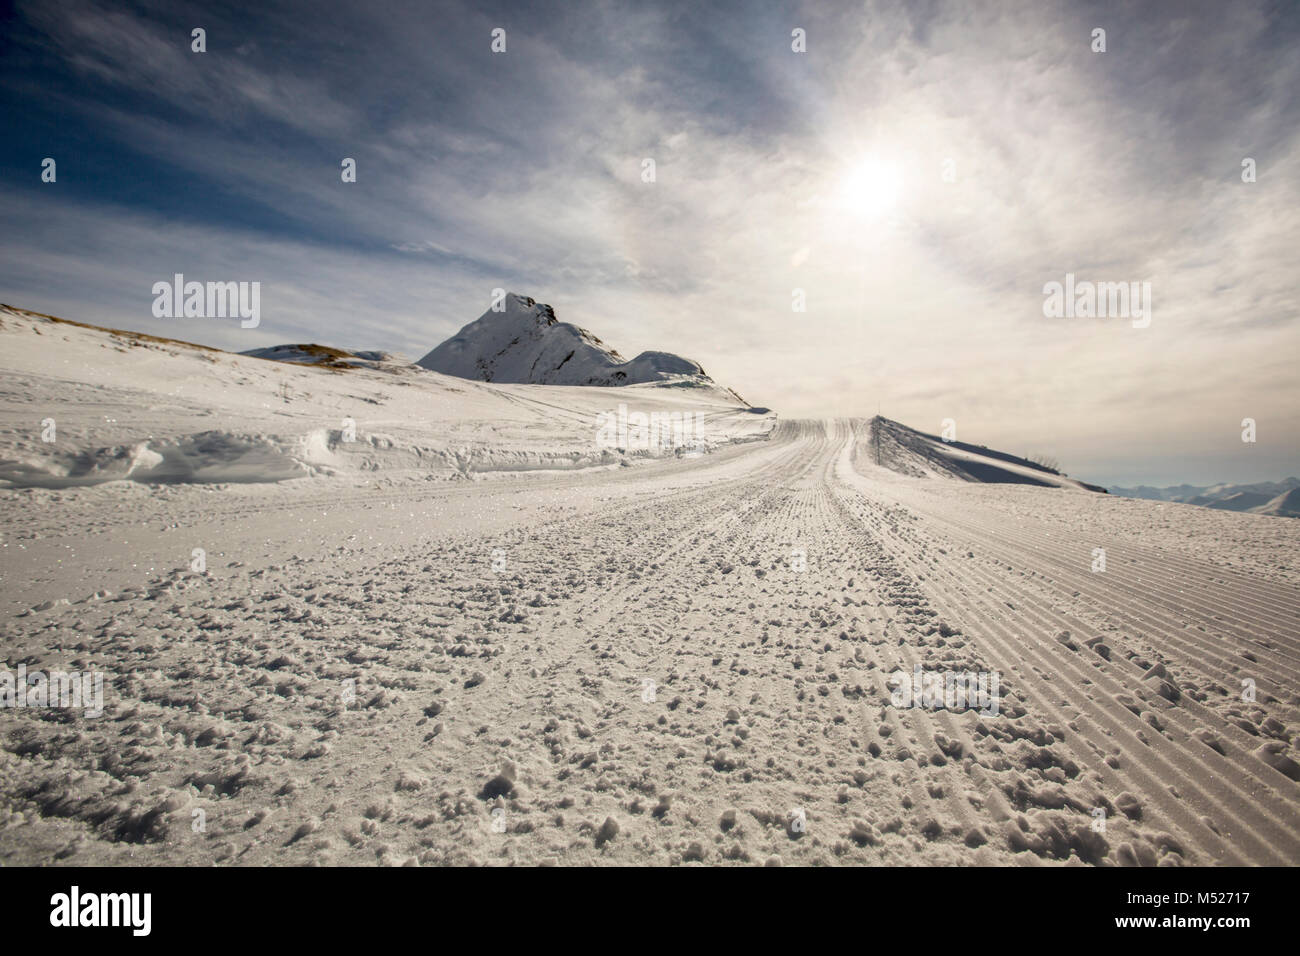 Piste de ski de fond dans la neige, hiver lumineux soleil sur ciel bleu clair Banque D'Images